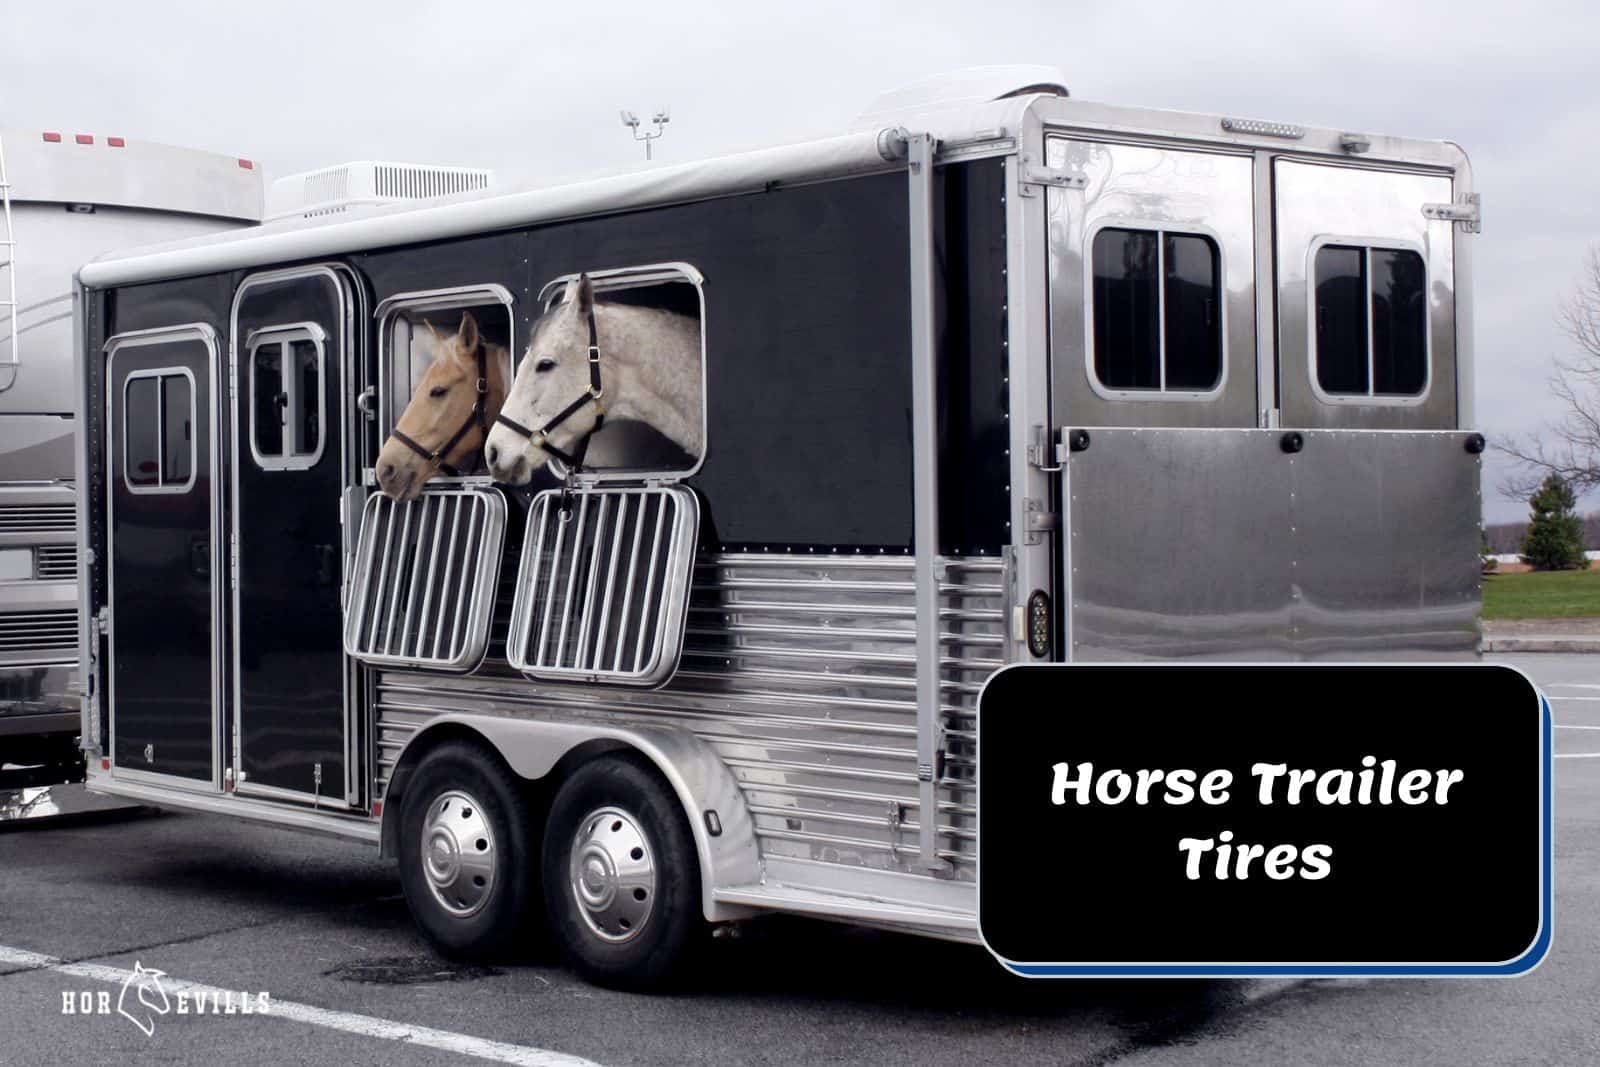 horses inside a trailer beside horse trailer tires